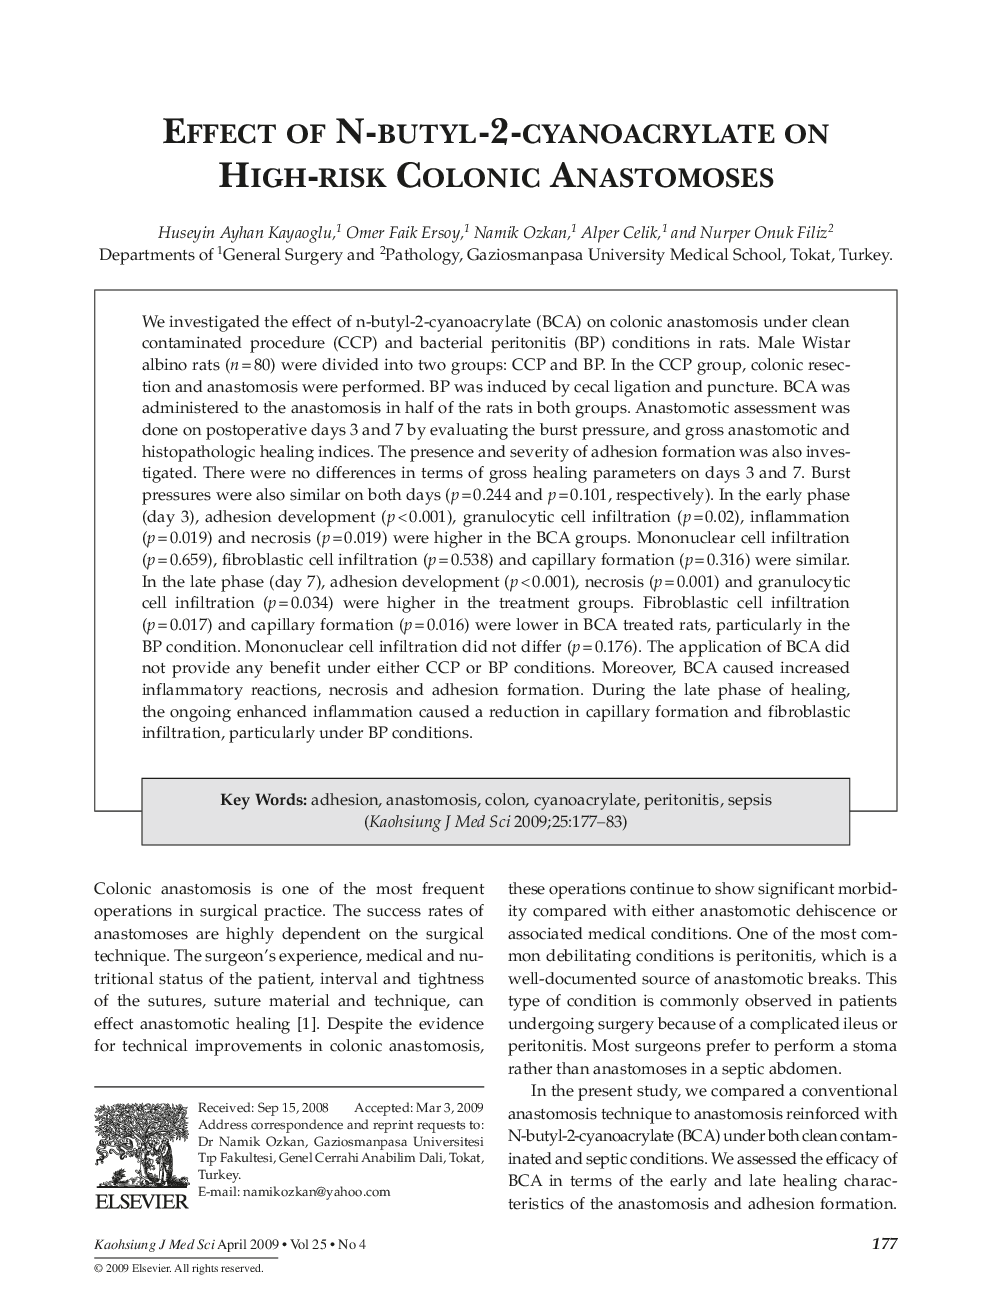 Effect of n-Butyl-2-Cyanoacrylate on High-Risk Colonic Anastomoses